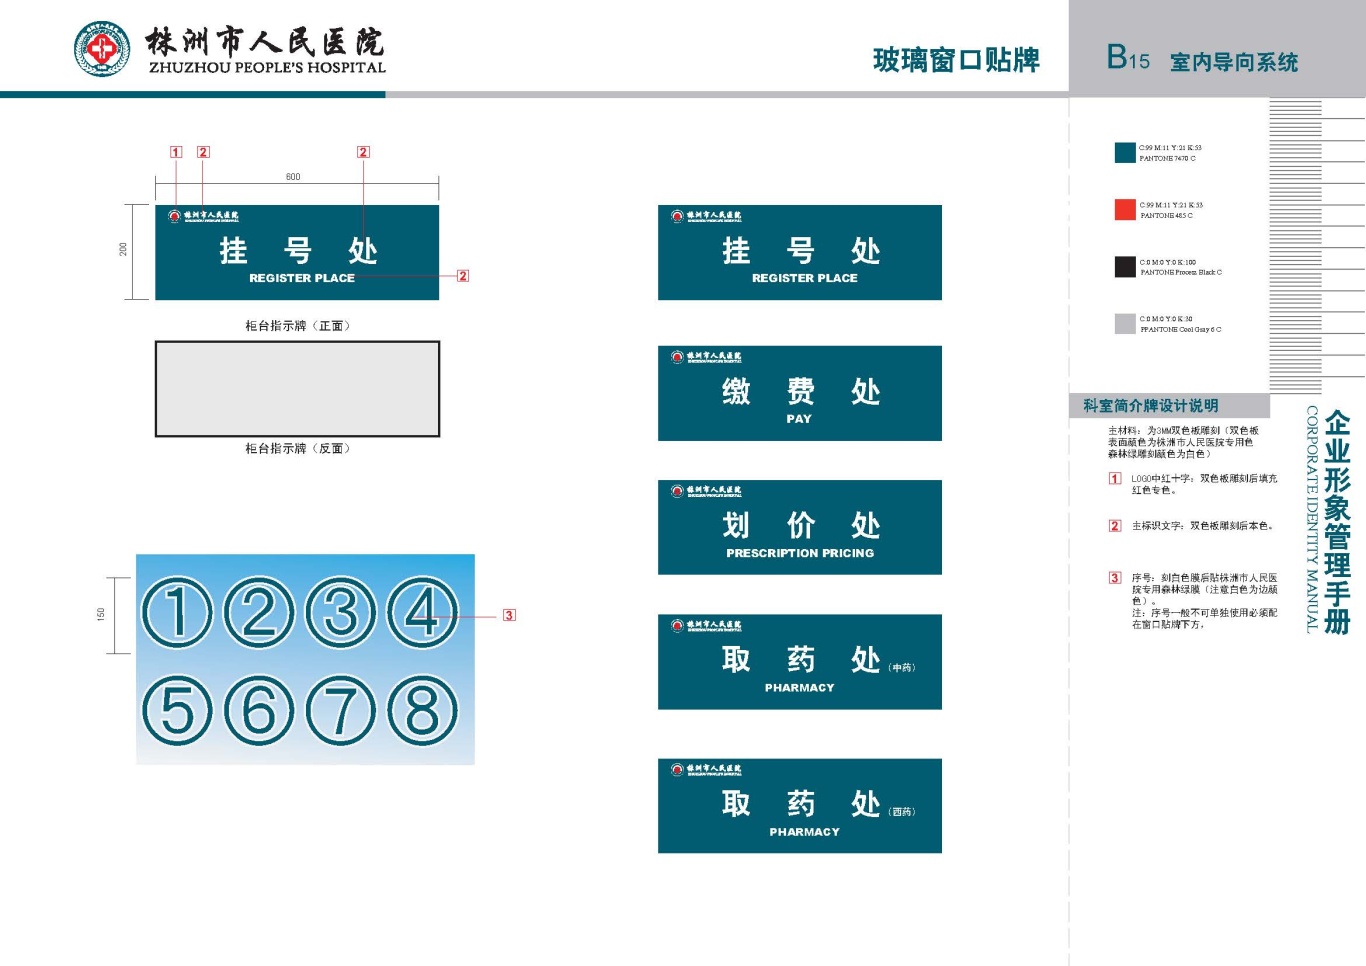 株洲市人民医院vis手册设计项目图33